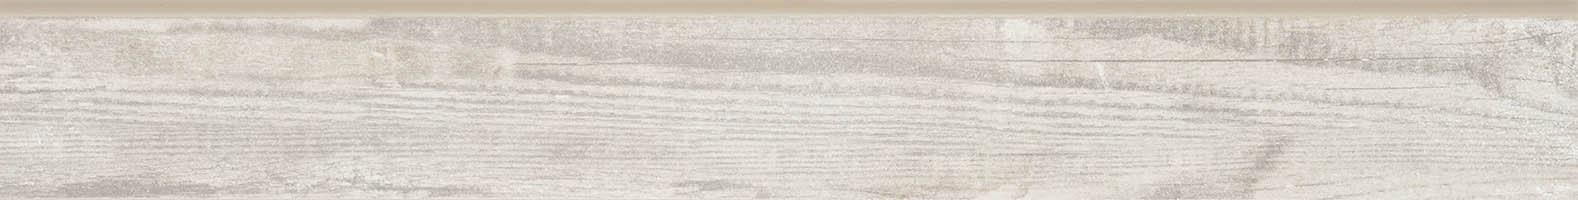 Плинтус под дерево ZLXLR3 7.6x60 белый матовый 000004484 by Zeus Ceramica (Украина) color Серый